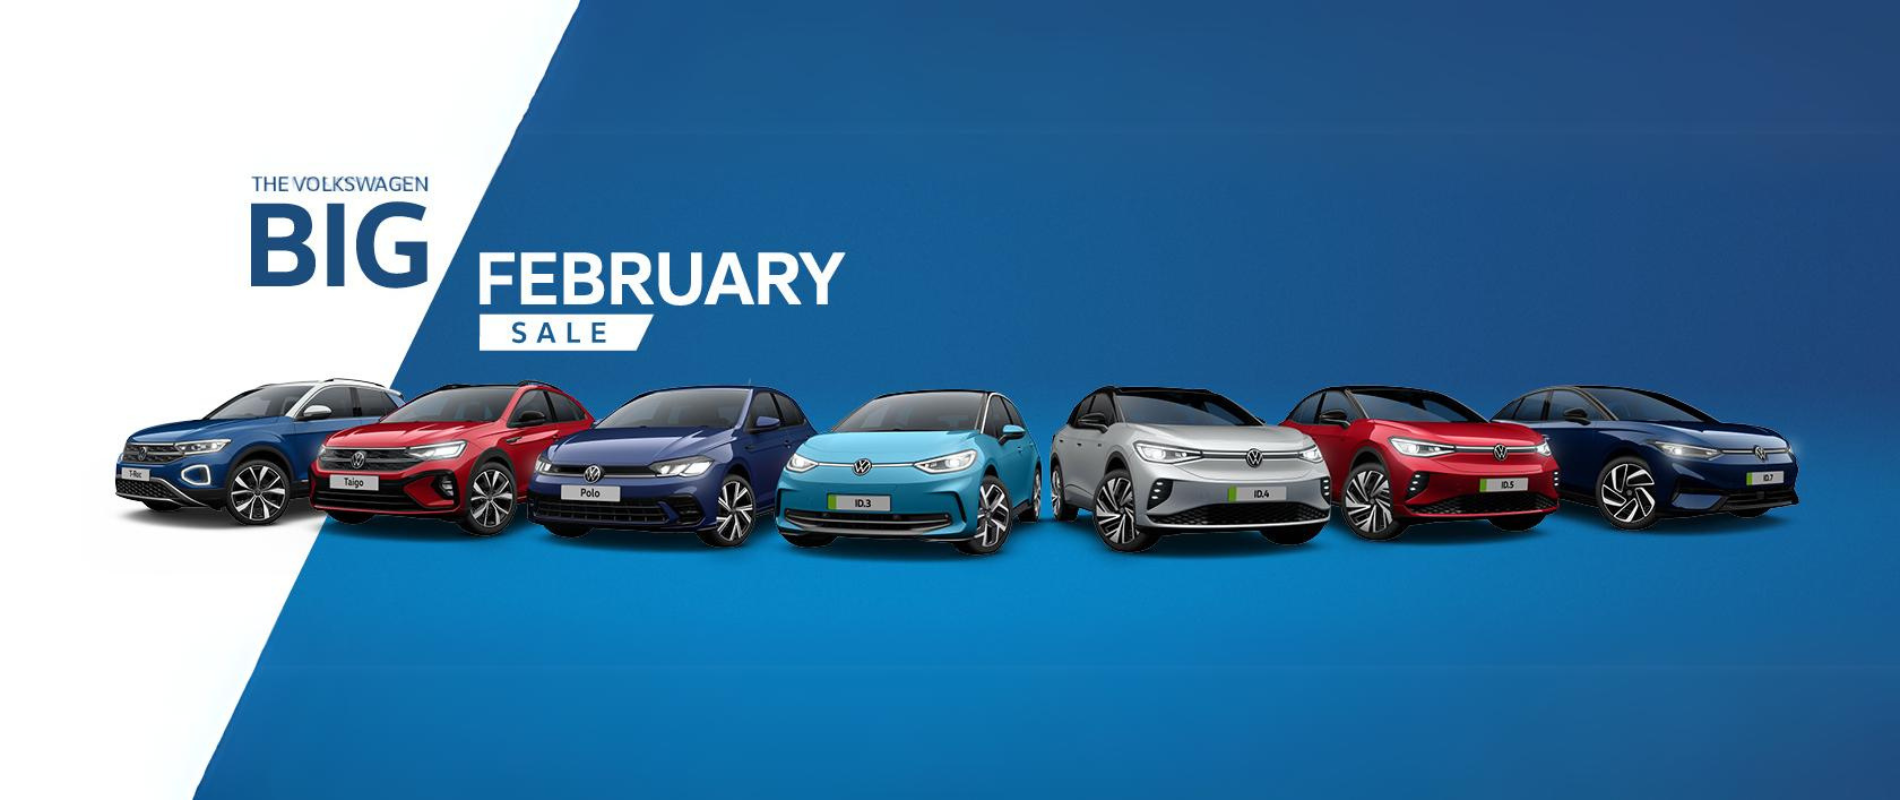 The Volkswagen Big February Sale